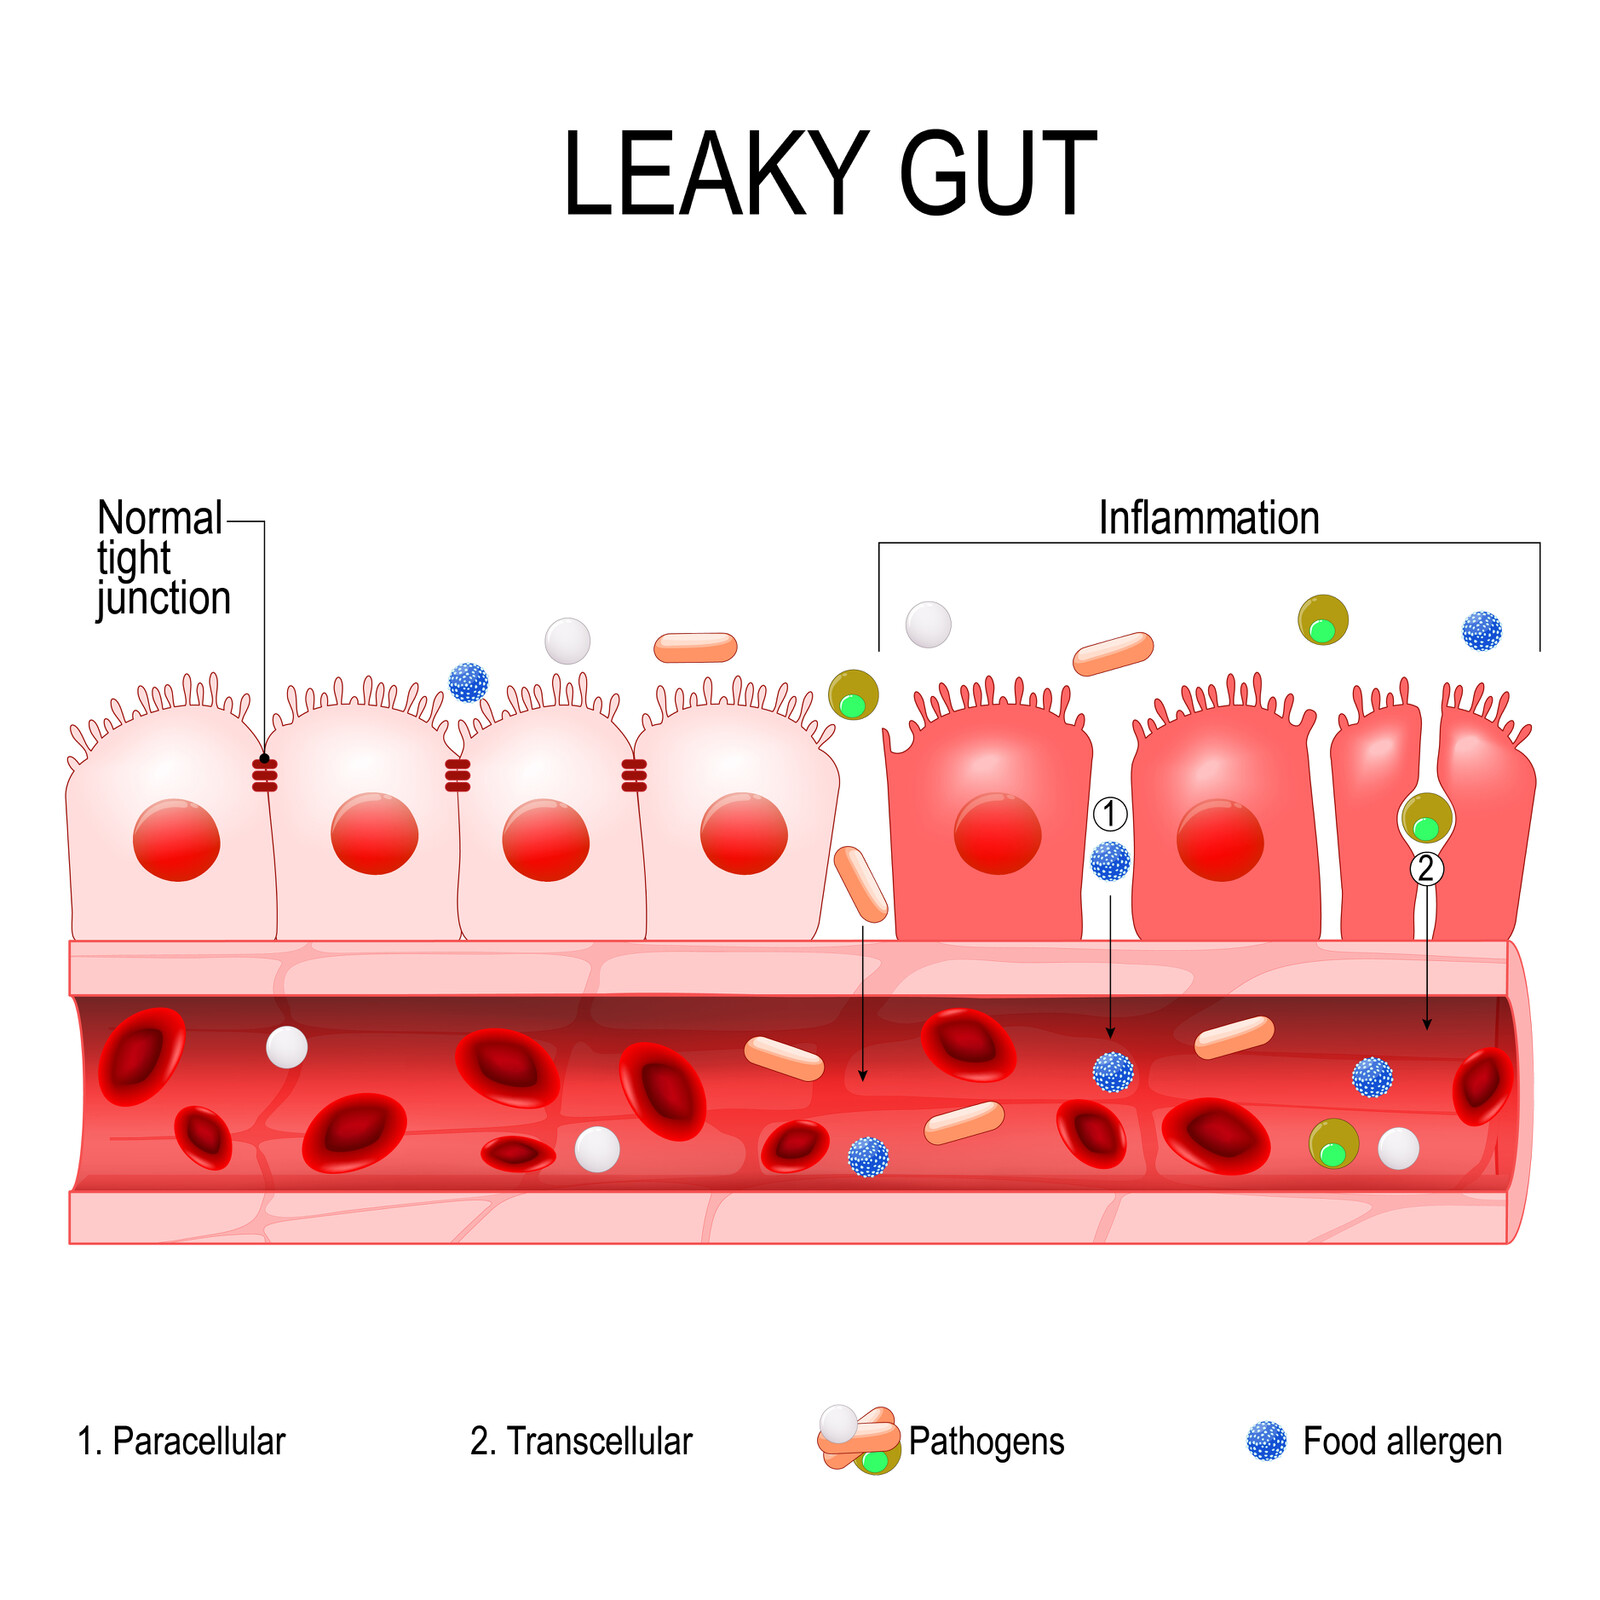 Een leaky gut geeft een verhoogd risico op een leaky brain